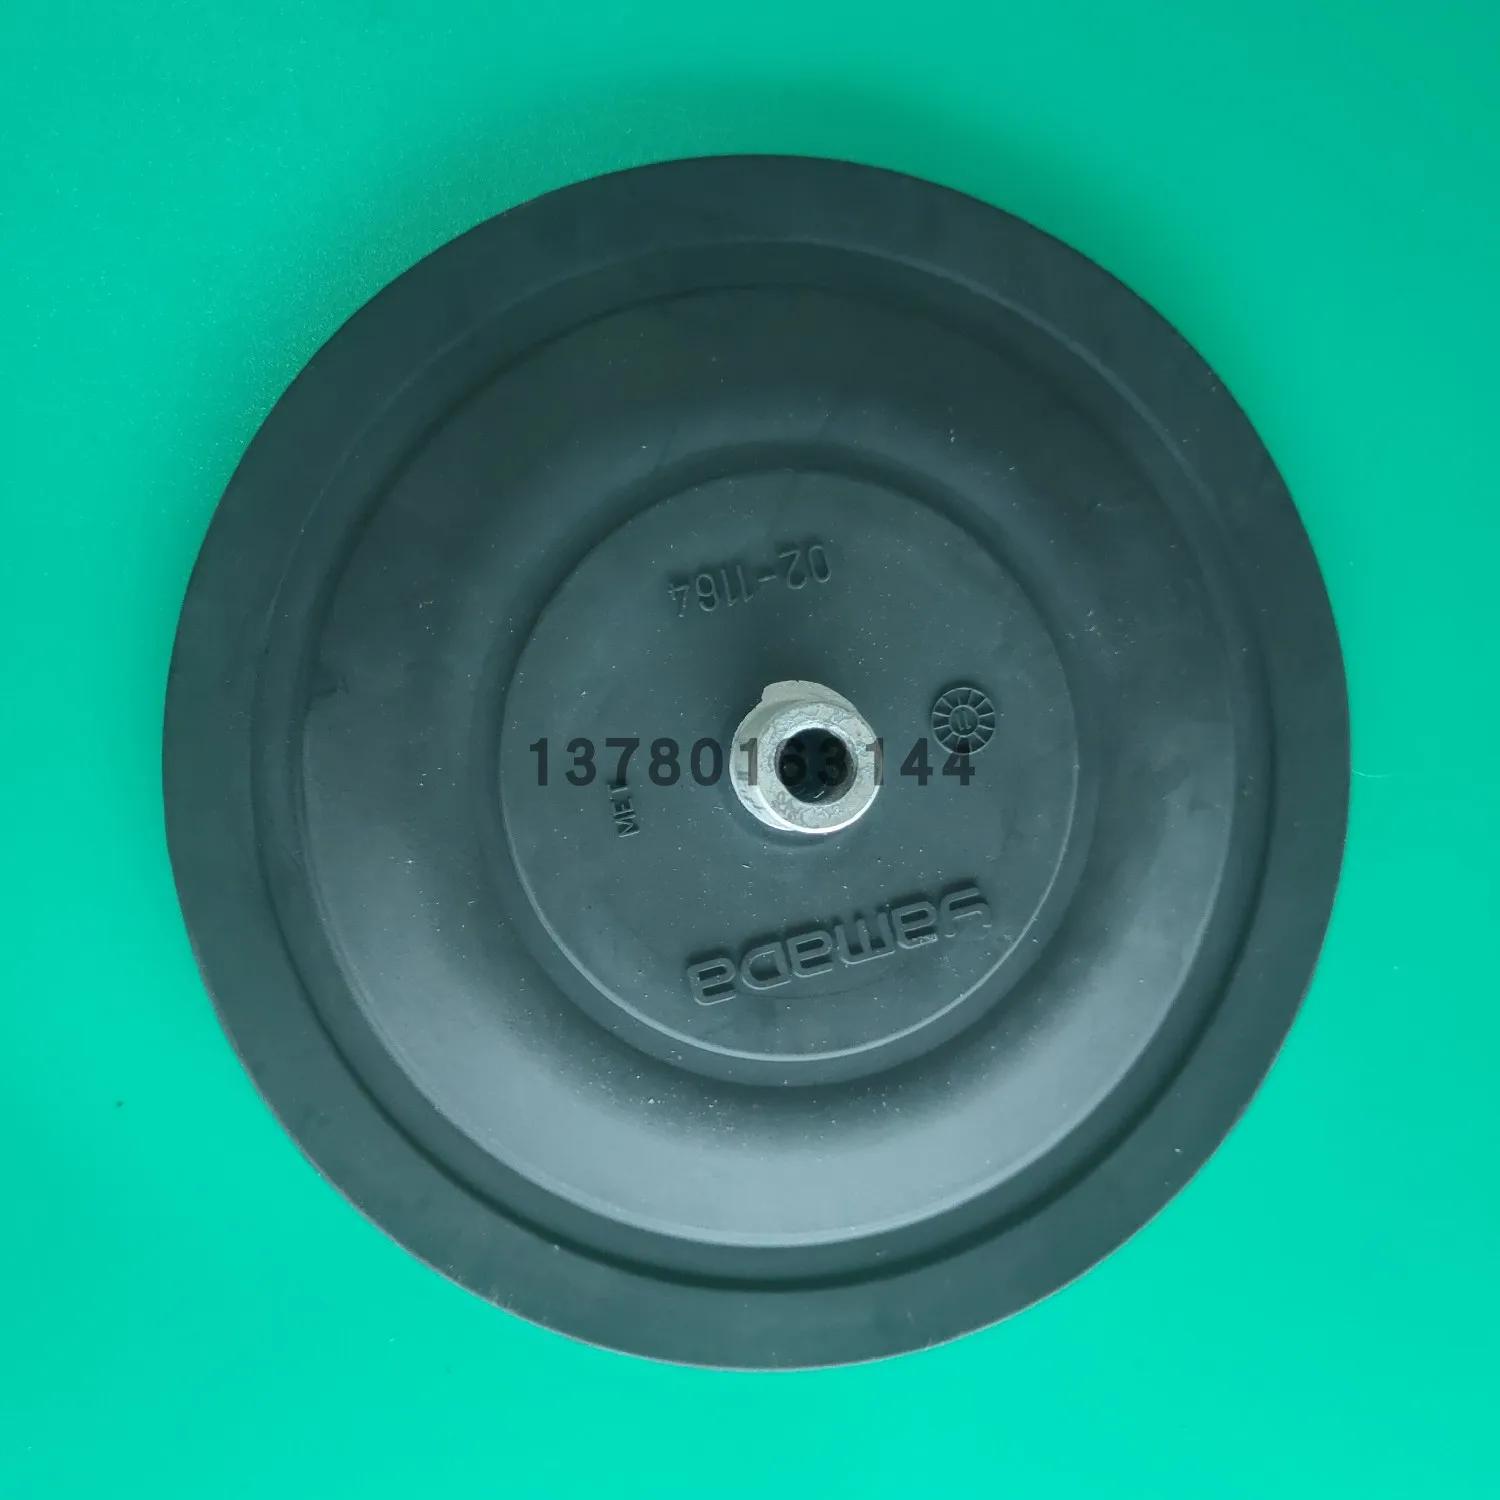  ̾  ̾ 02-1164   ̾  145mm